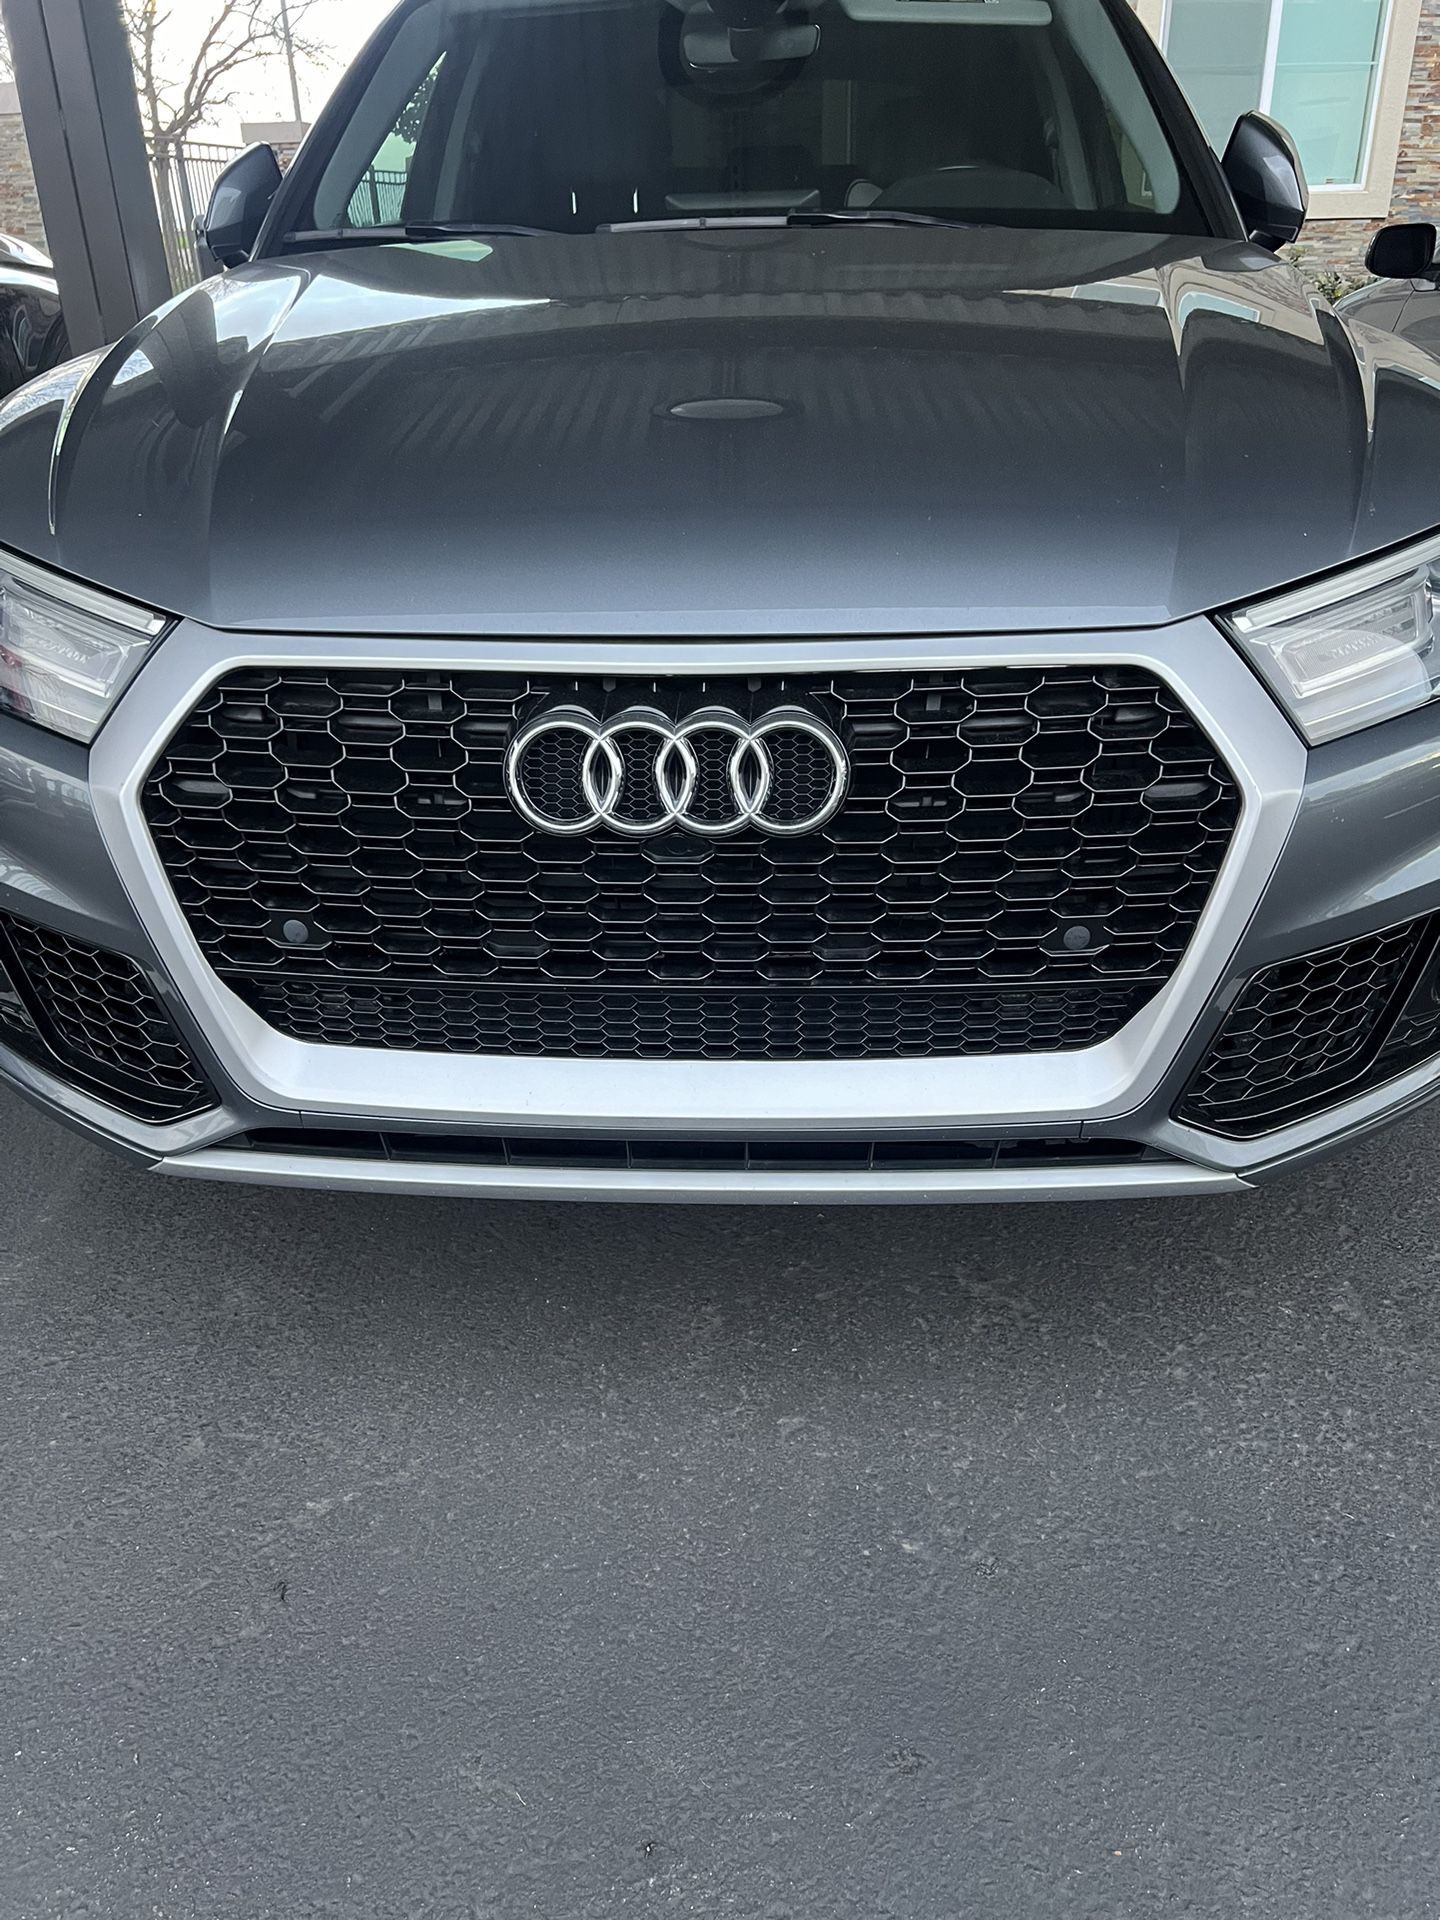 2018-20 Audi Q5 Grille